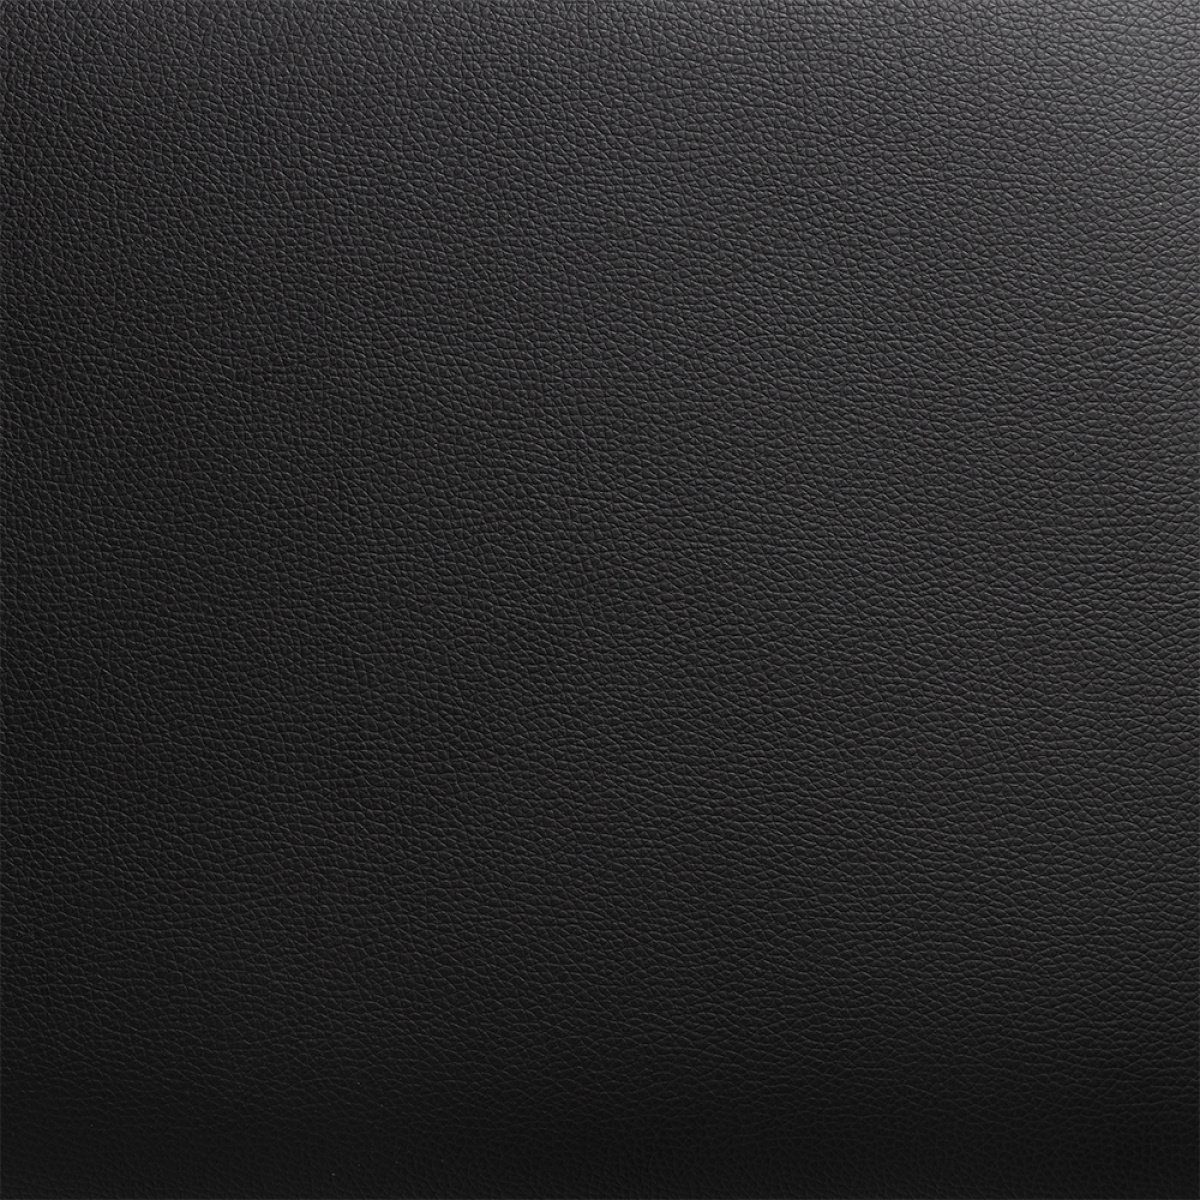 Stagg Klavierbank Klavierbank, mit in matt, schwarz Vinylbezug Palisander, Farbe